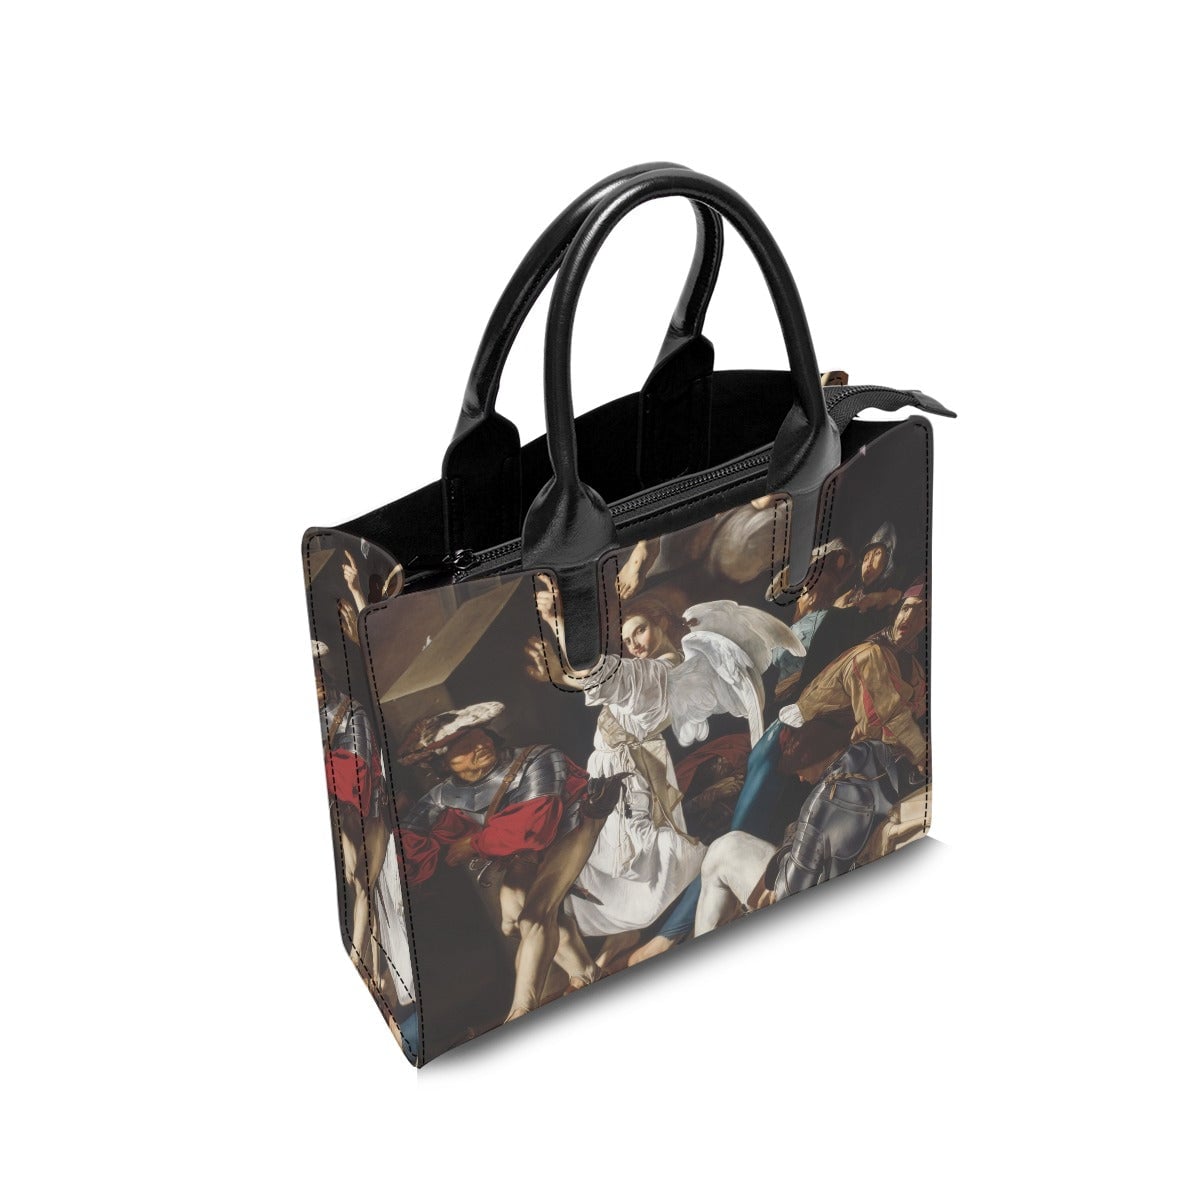 The Resurrection by Caravaggio Baroque Art Handbag